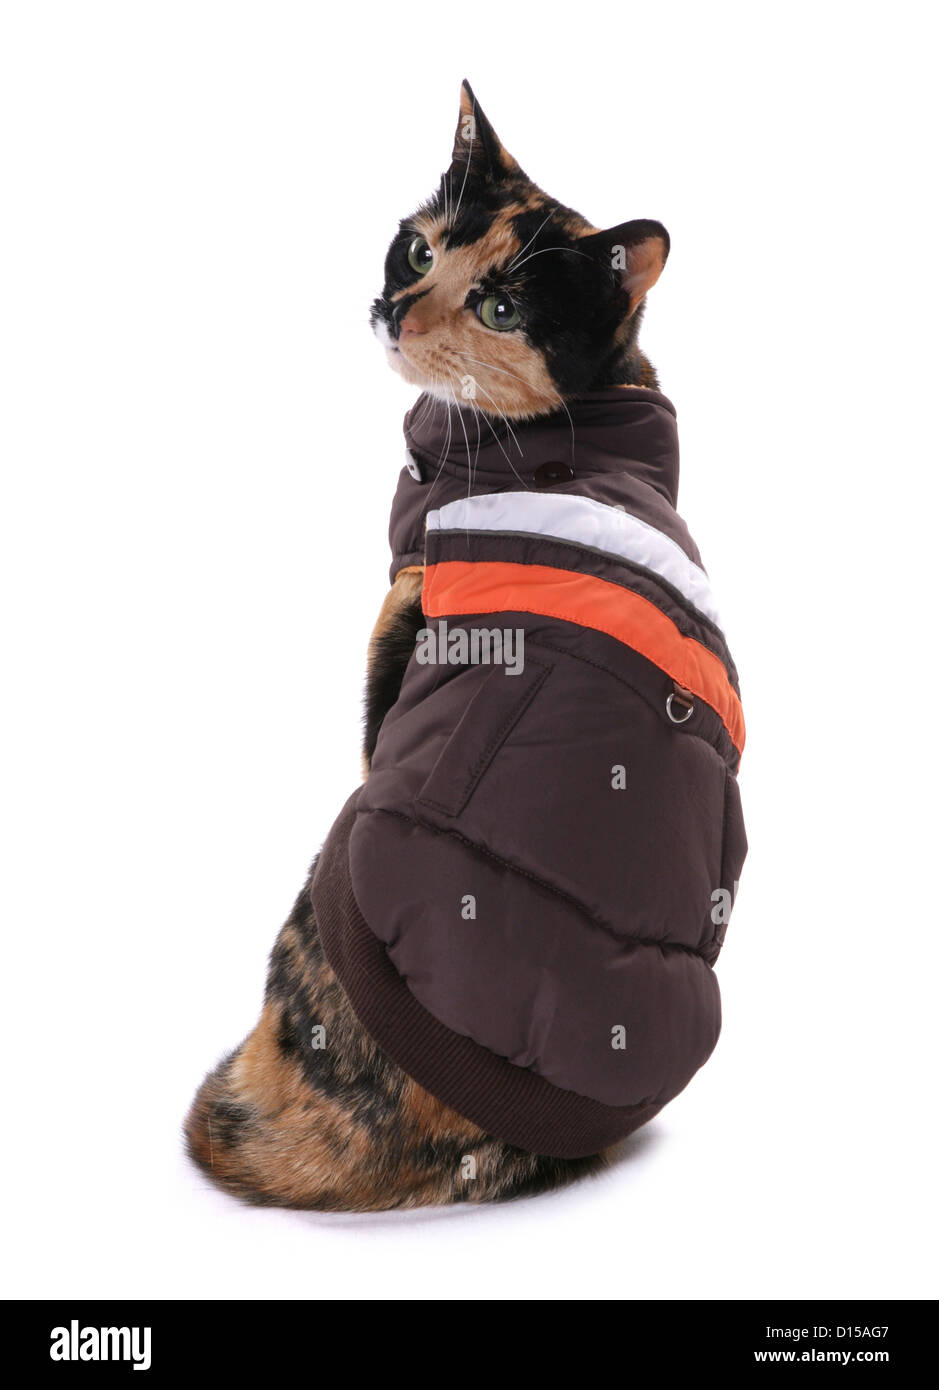 cat wearing jacket